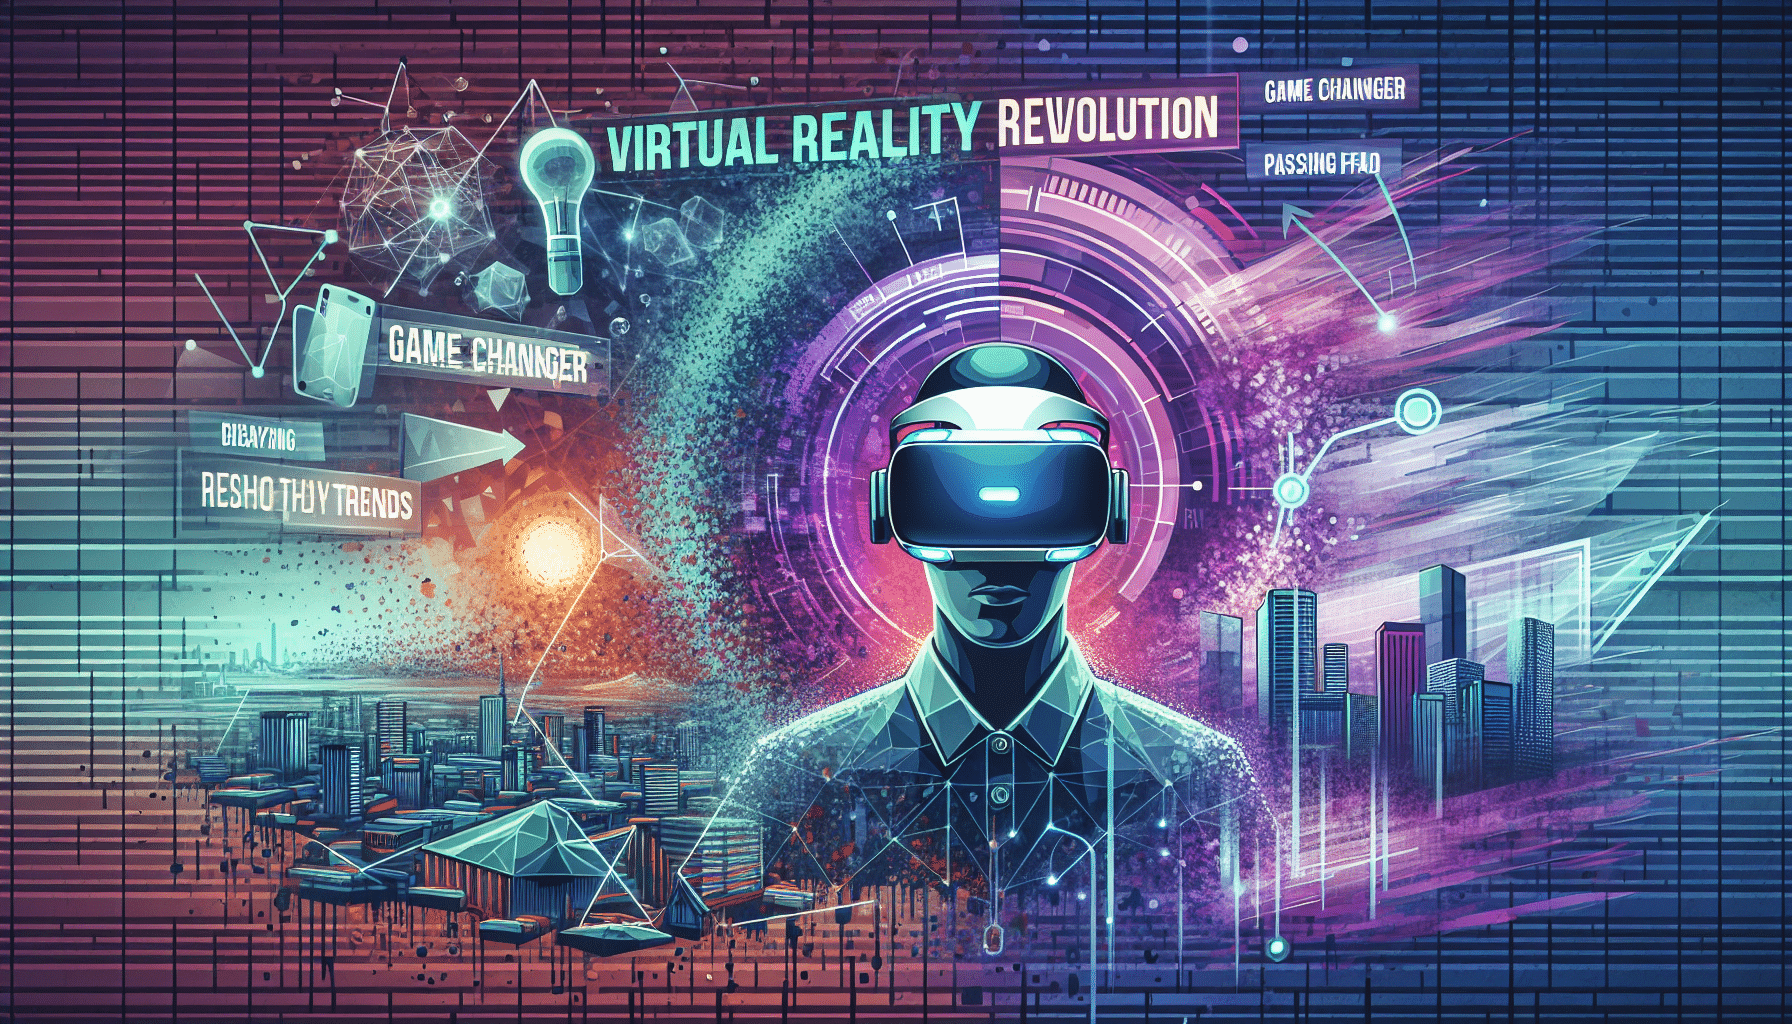 découvrez l'essor de la réalité virtuelle : une révolution technologique ou un simple phénomène passager ? trouvez des réponses ici.